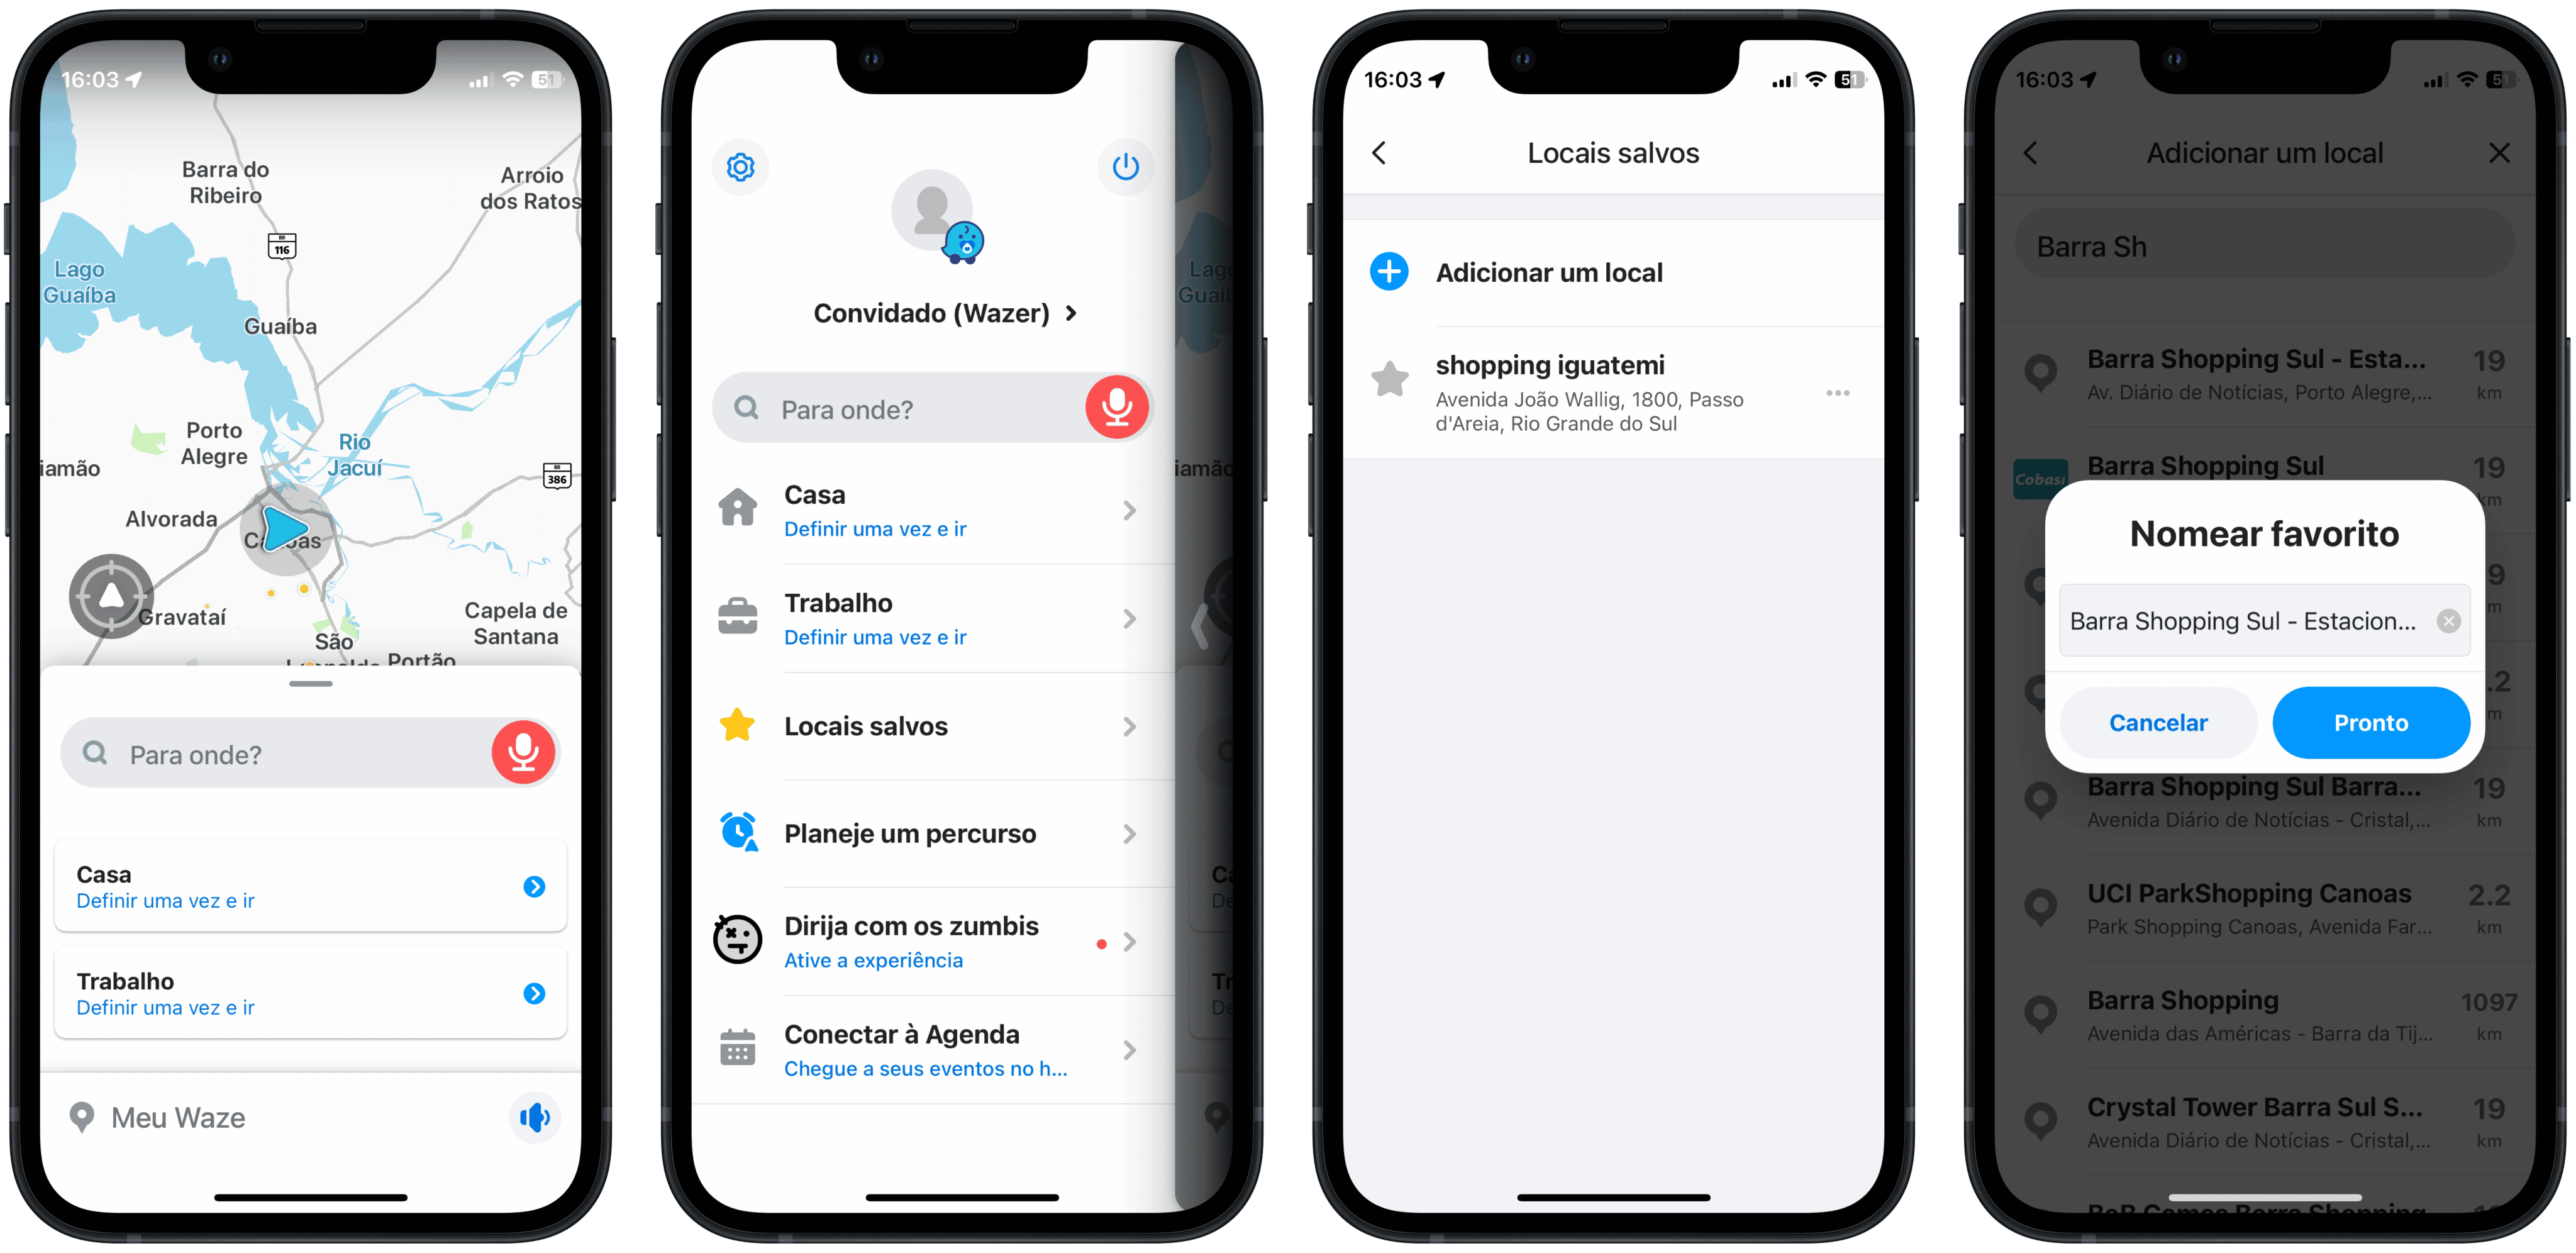 Após fiasco dos mapas, Apple elege Waze como app do ano para iPhone